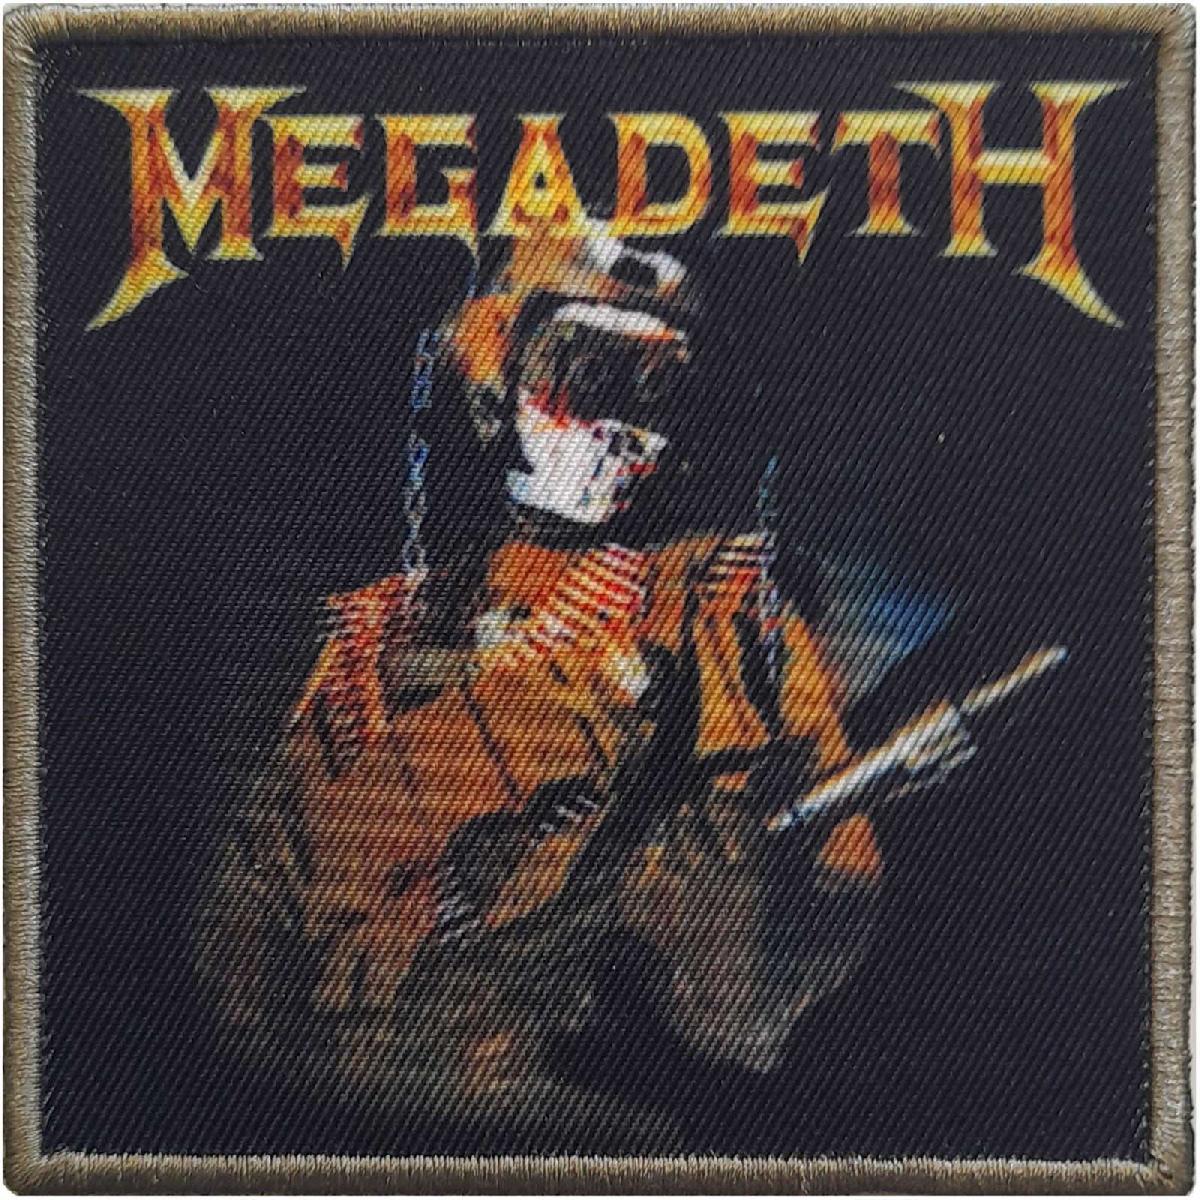 Megadeth Trooper